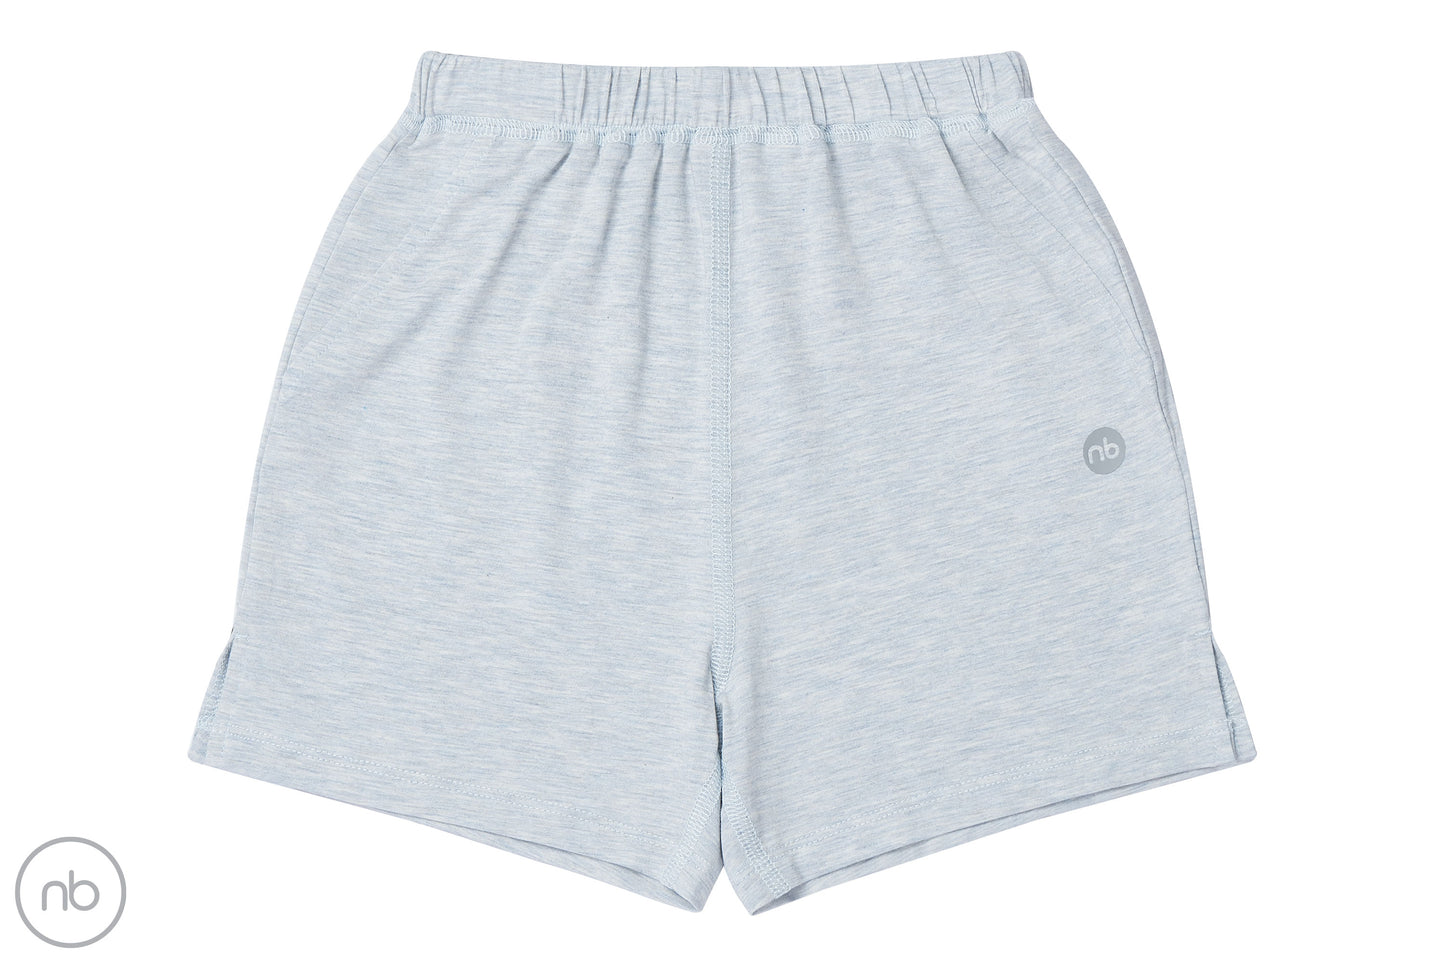 Basics Shorts (Bamboo Turalear) - Grey Dawn